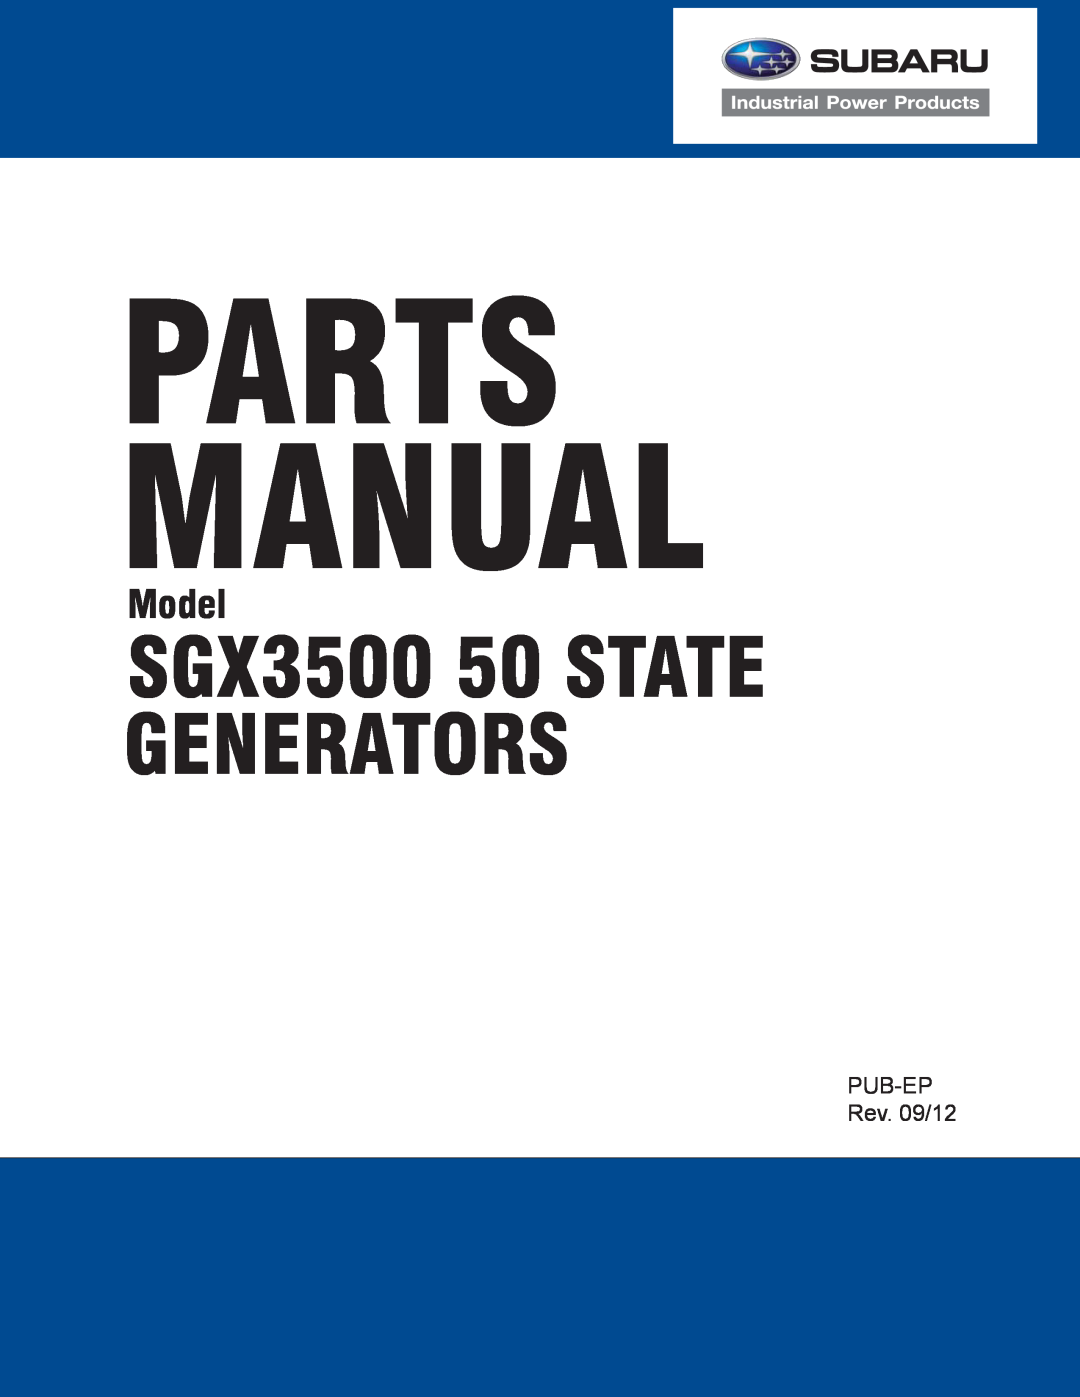 Subaru manual Parts Manual, SGX3500 50 STATE GENERATORS, Model, PUB-EPRev. 09/12 